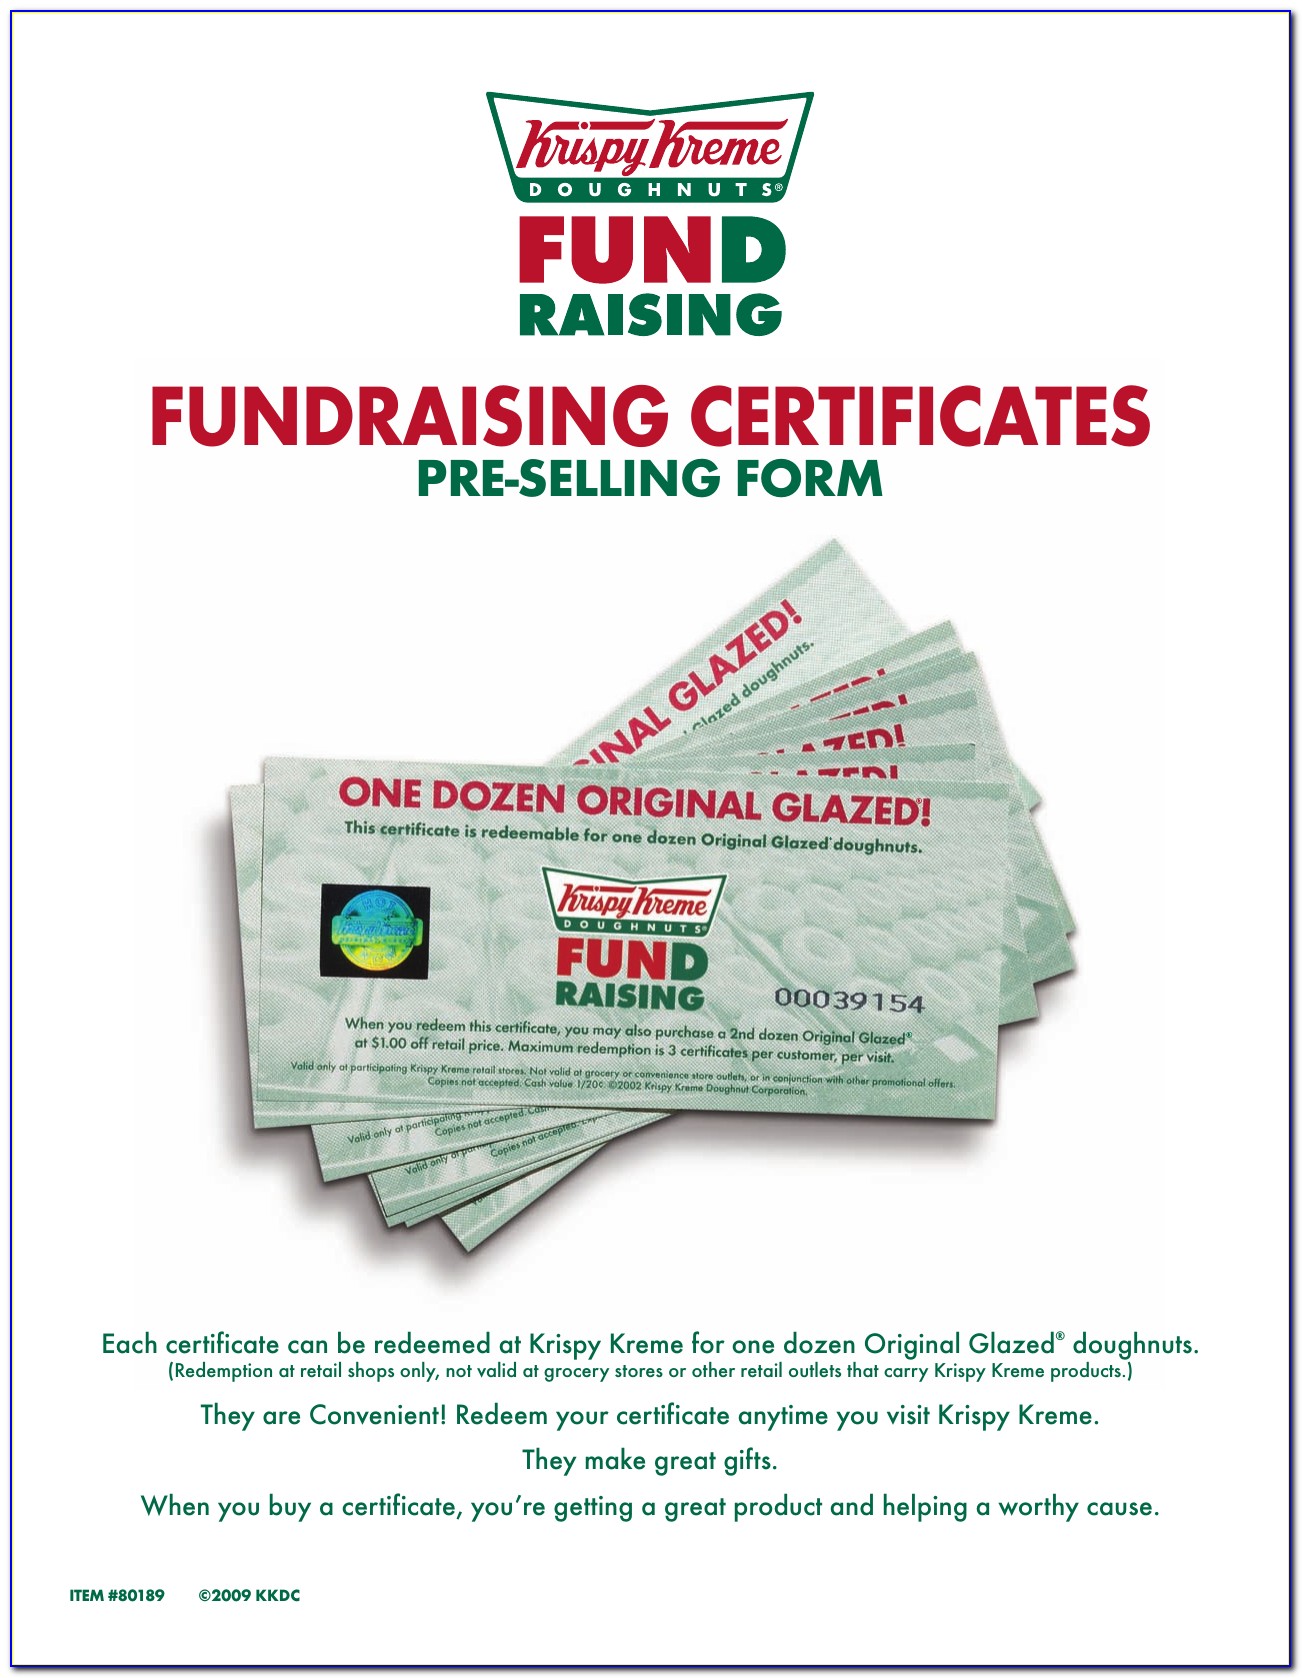 Do Krispy Kreme Fundraiser Certificates Expire